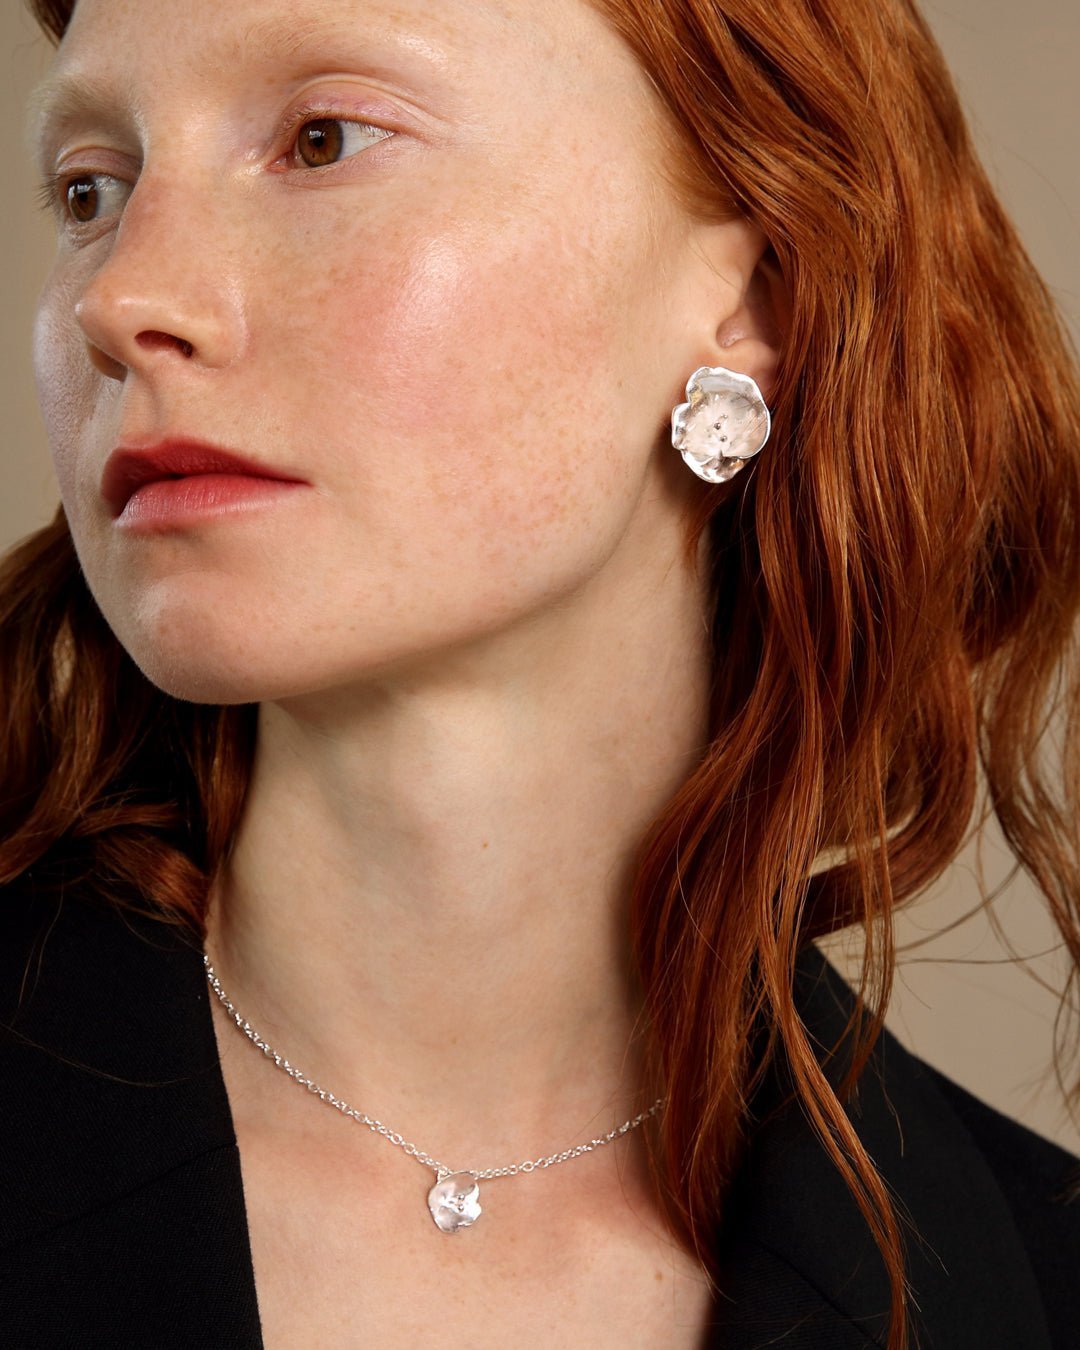 Summer night rose earrings medium size silver half pair right